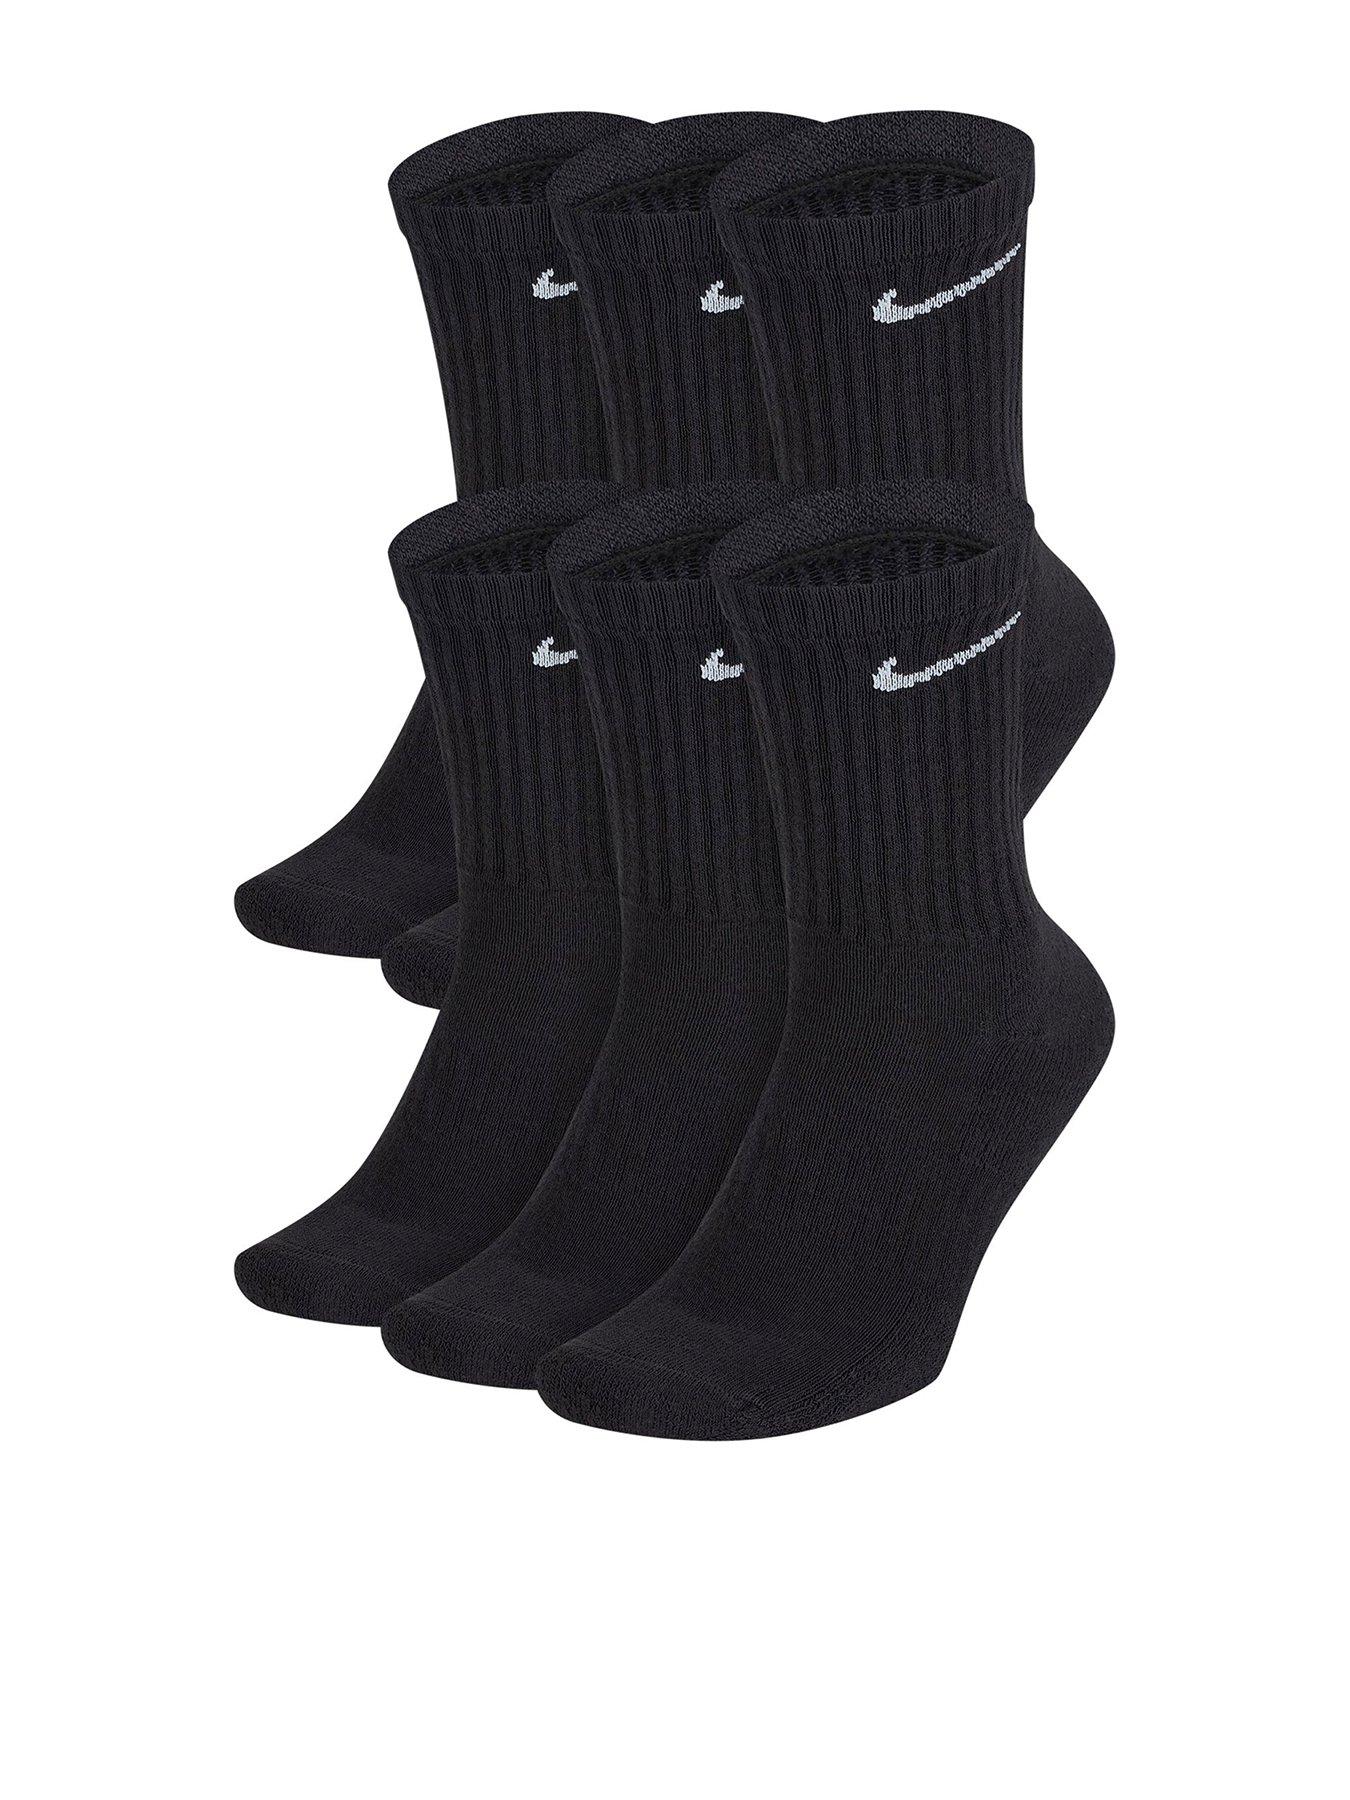 Michael Kors Sports Athletic Socks for Men